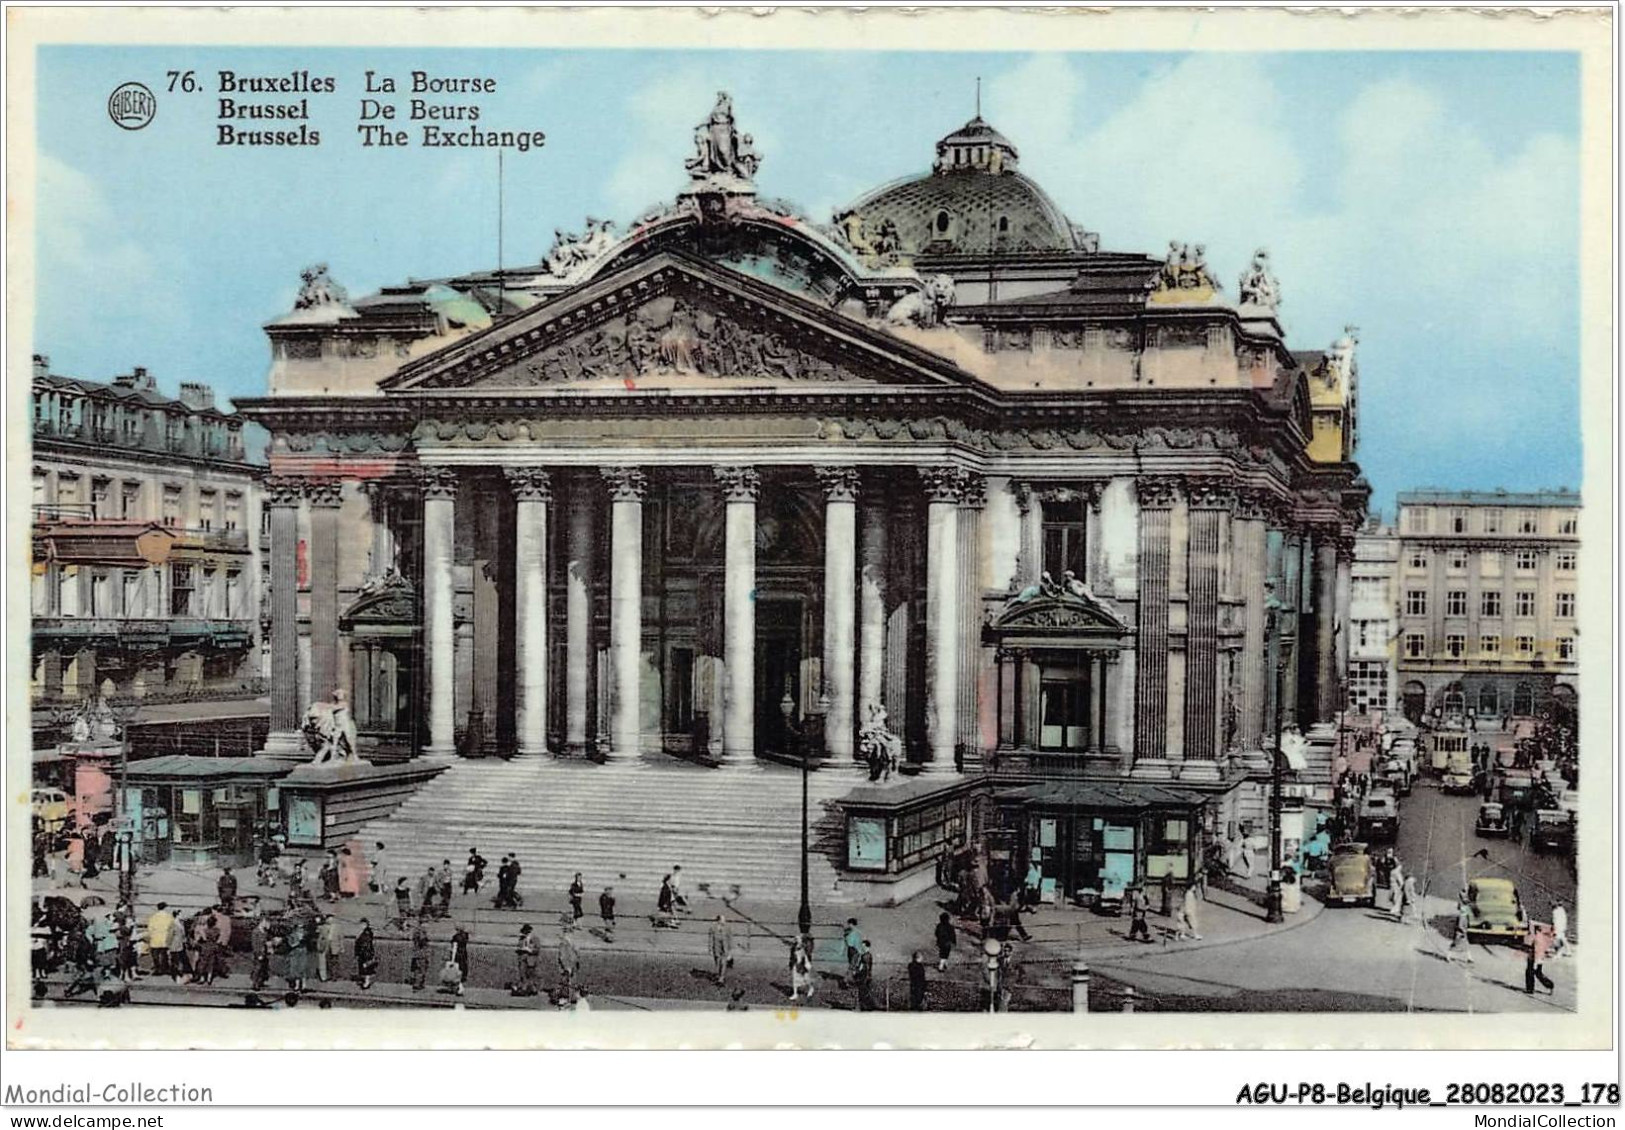 AGUP8-0716-BELGIQUE - BRUXELLES - La Bourse - Monuments, édifices